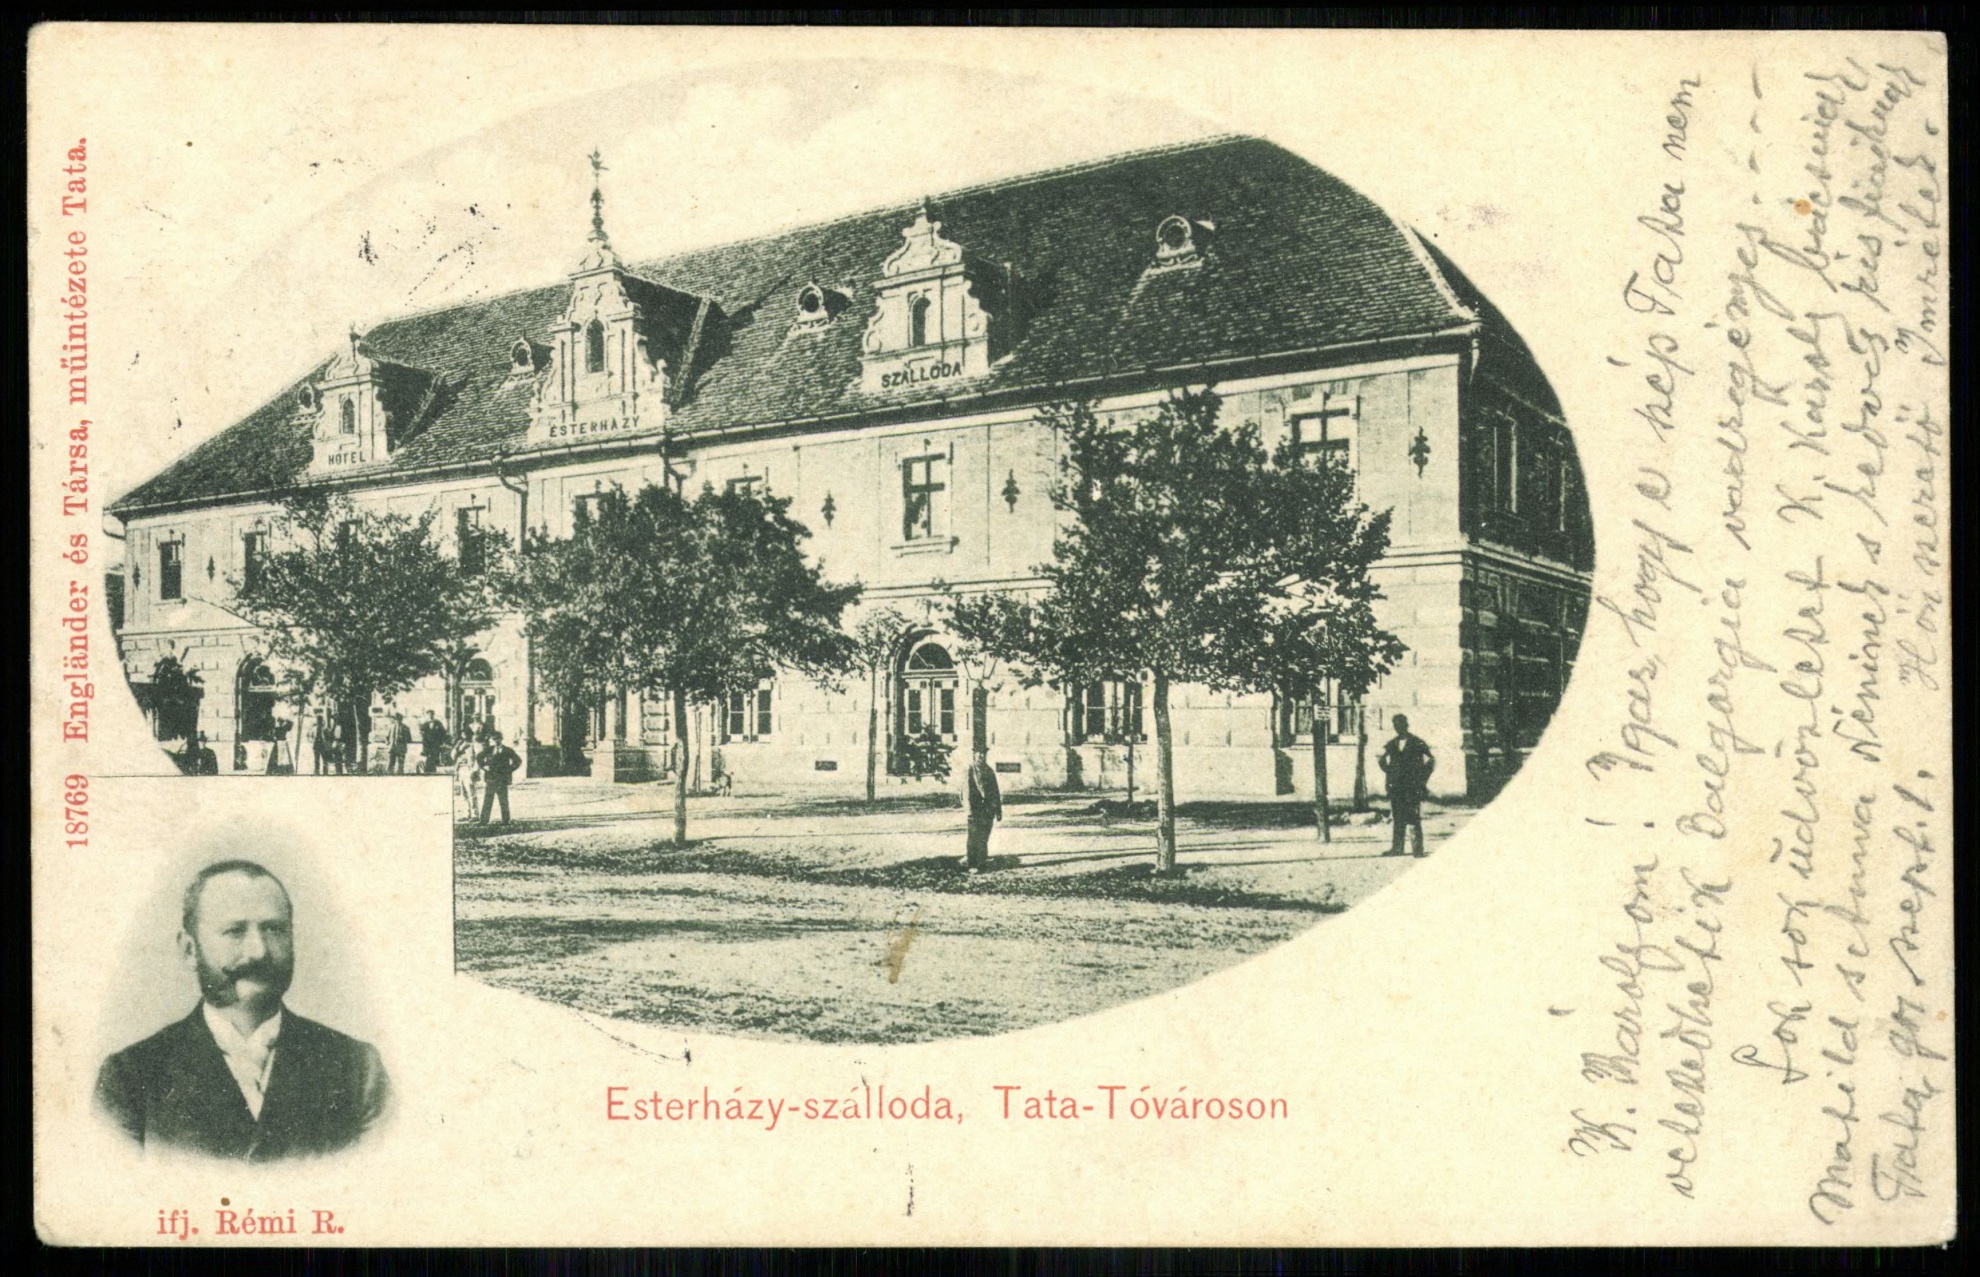 Tatatóváros Esterházy szálloda, ifj. Rémi R. (Magyar Kereskedelmi és Vendéglátóipari Múzeum CC BY-NC-ND)